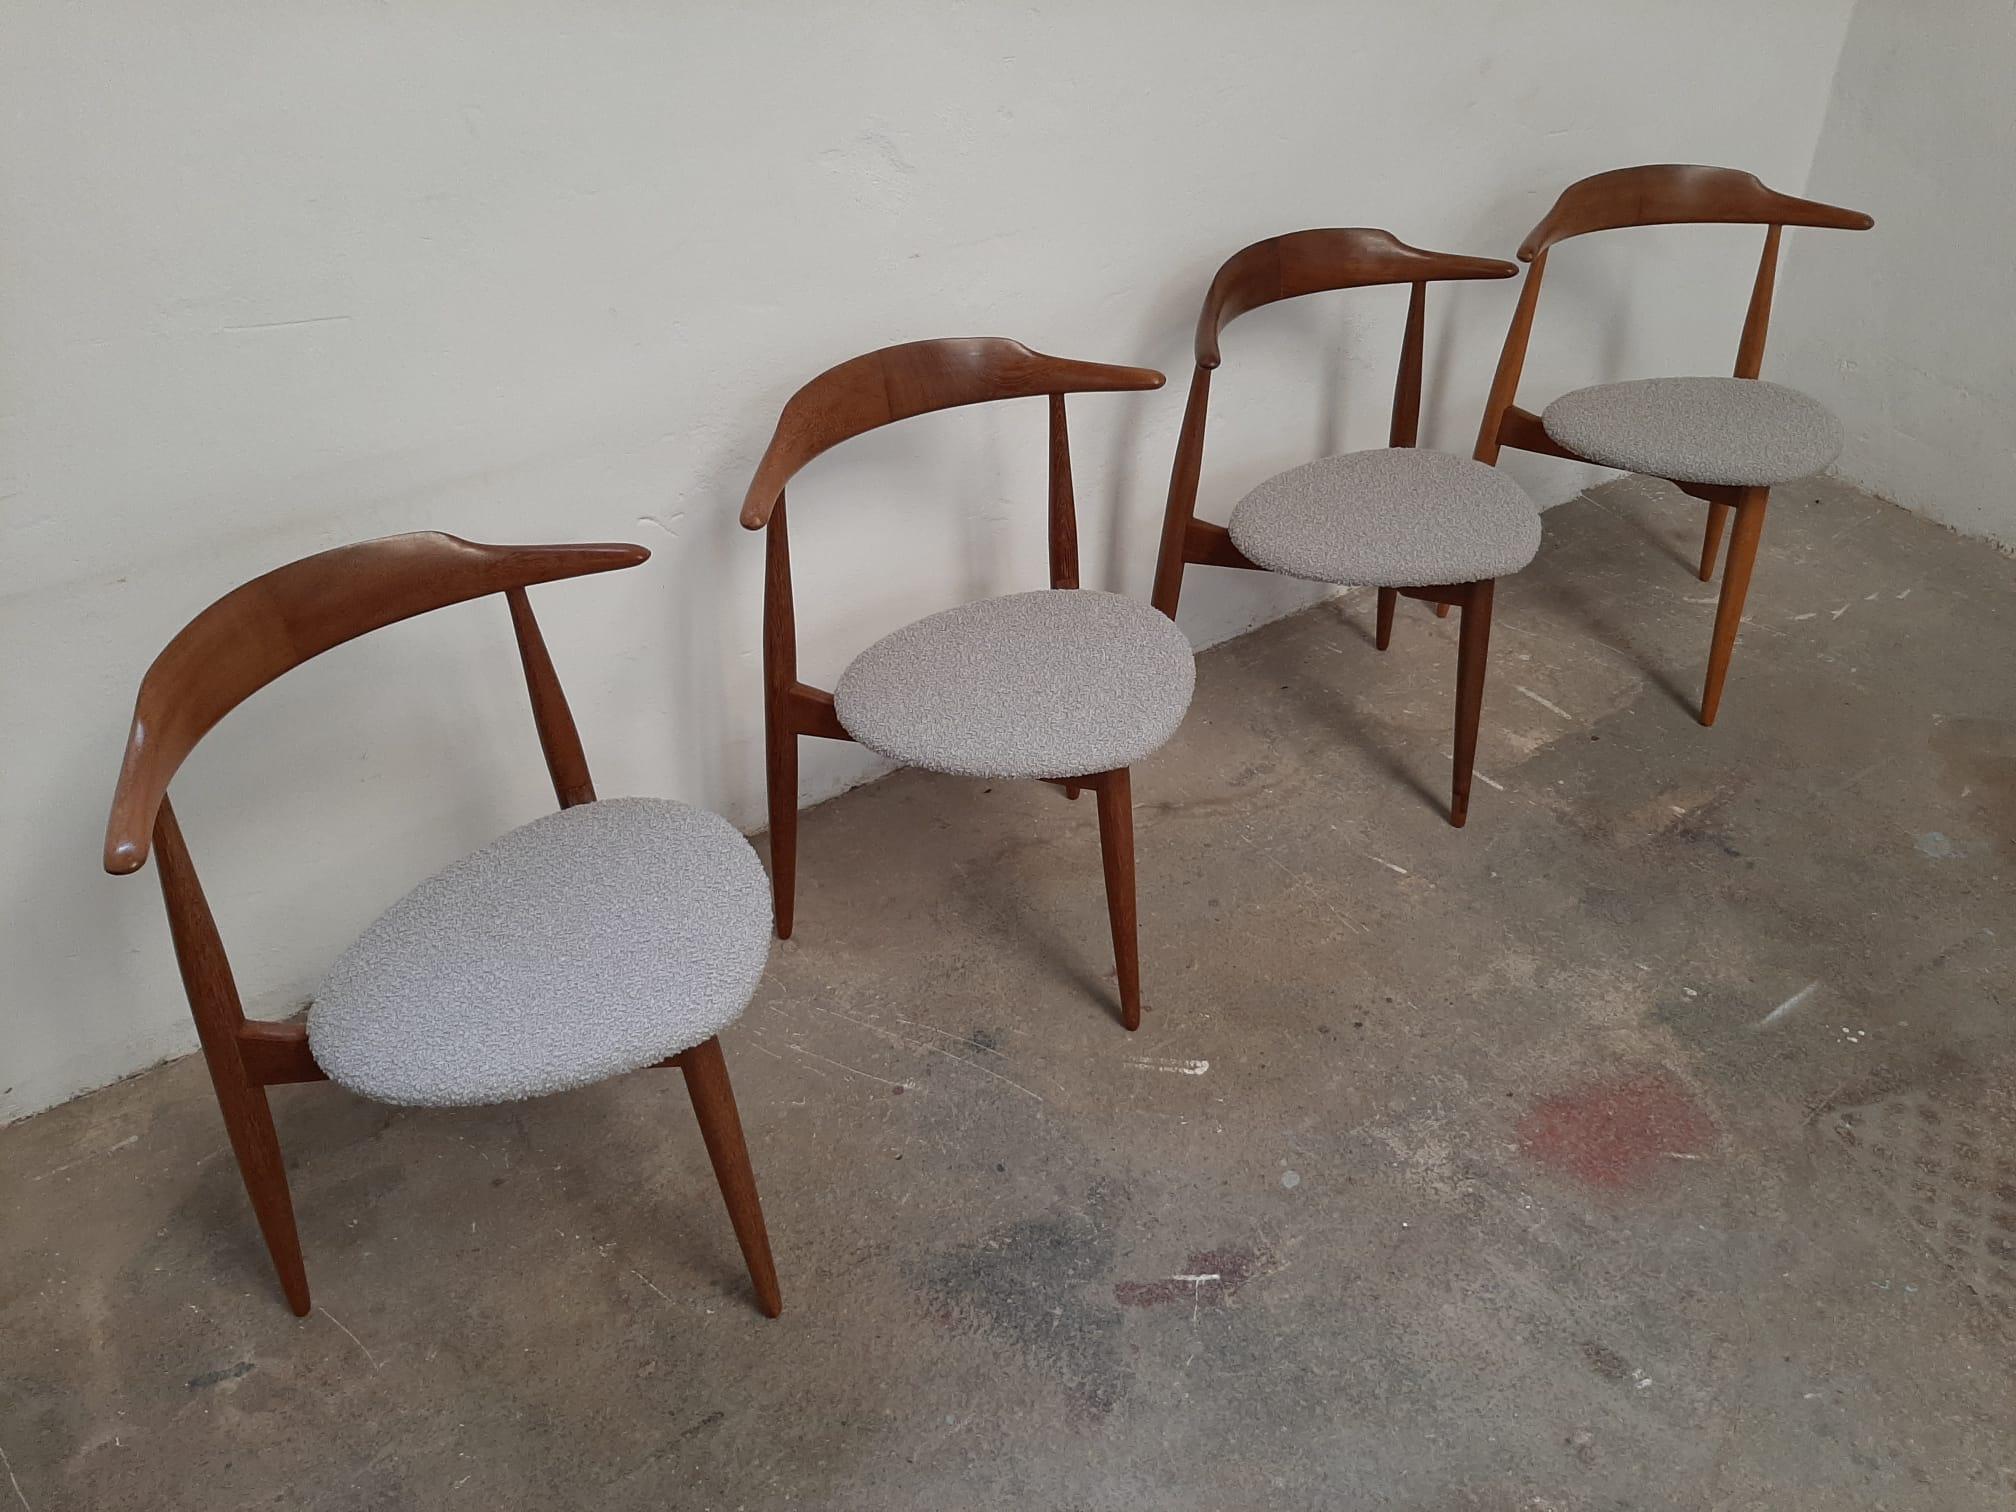 Danish Hans J. Wegner Style Three-Legged Chair, Denmark 1960s For Sale